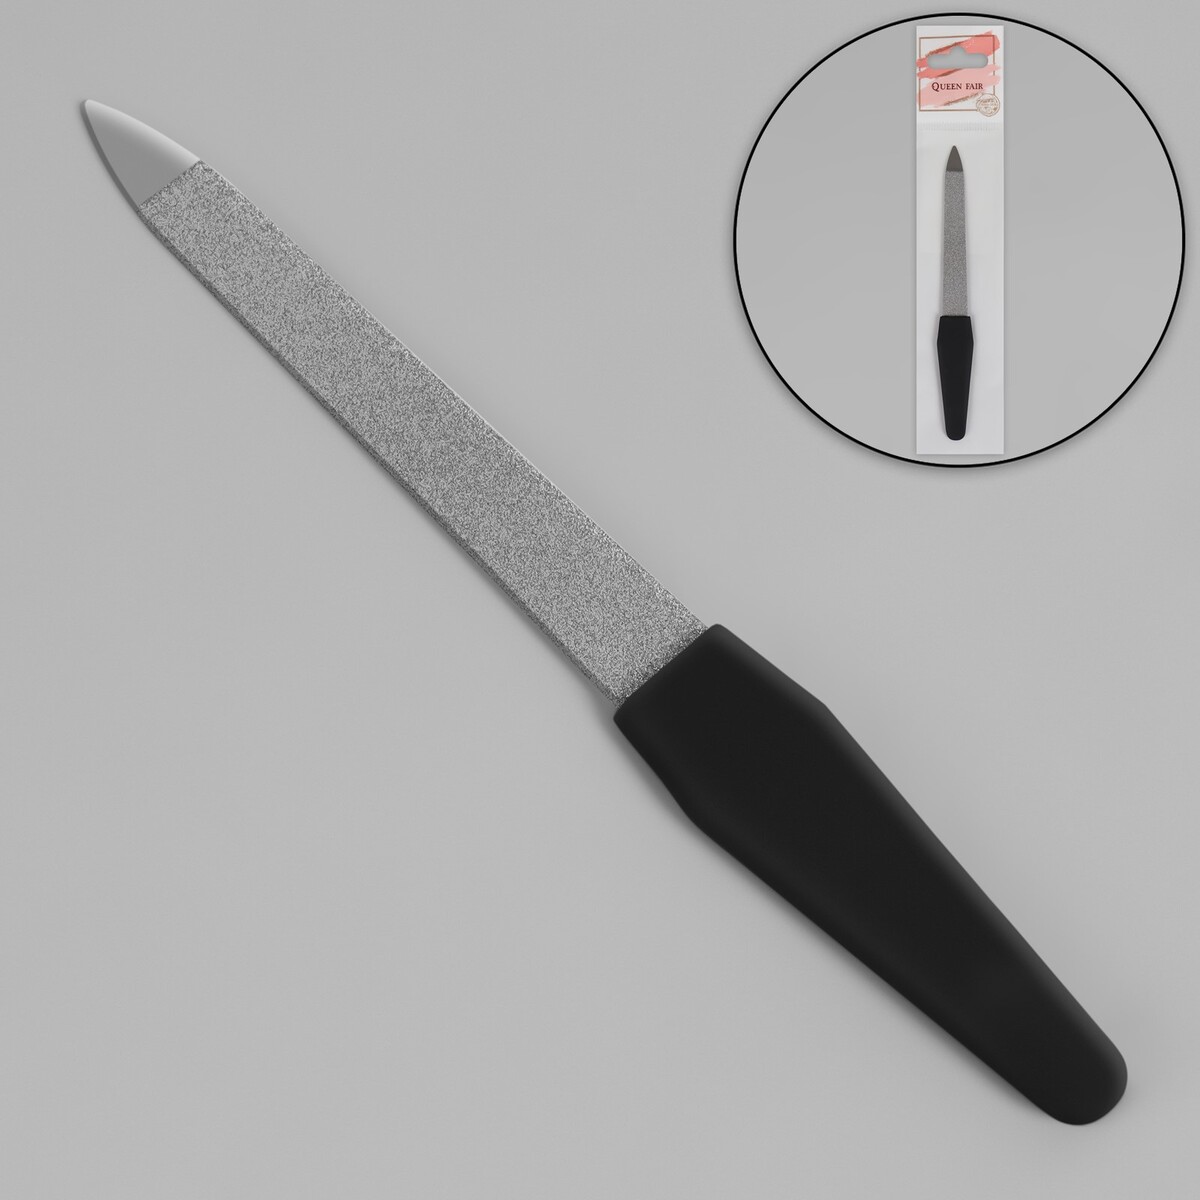 Пилка металлическая для ногтей, прорезиненная ручка, 12 см, цвет серебристый/черный пилка металлическая для ногтей 12 см на блистере серебристый